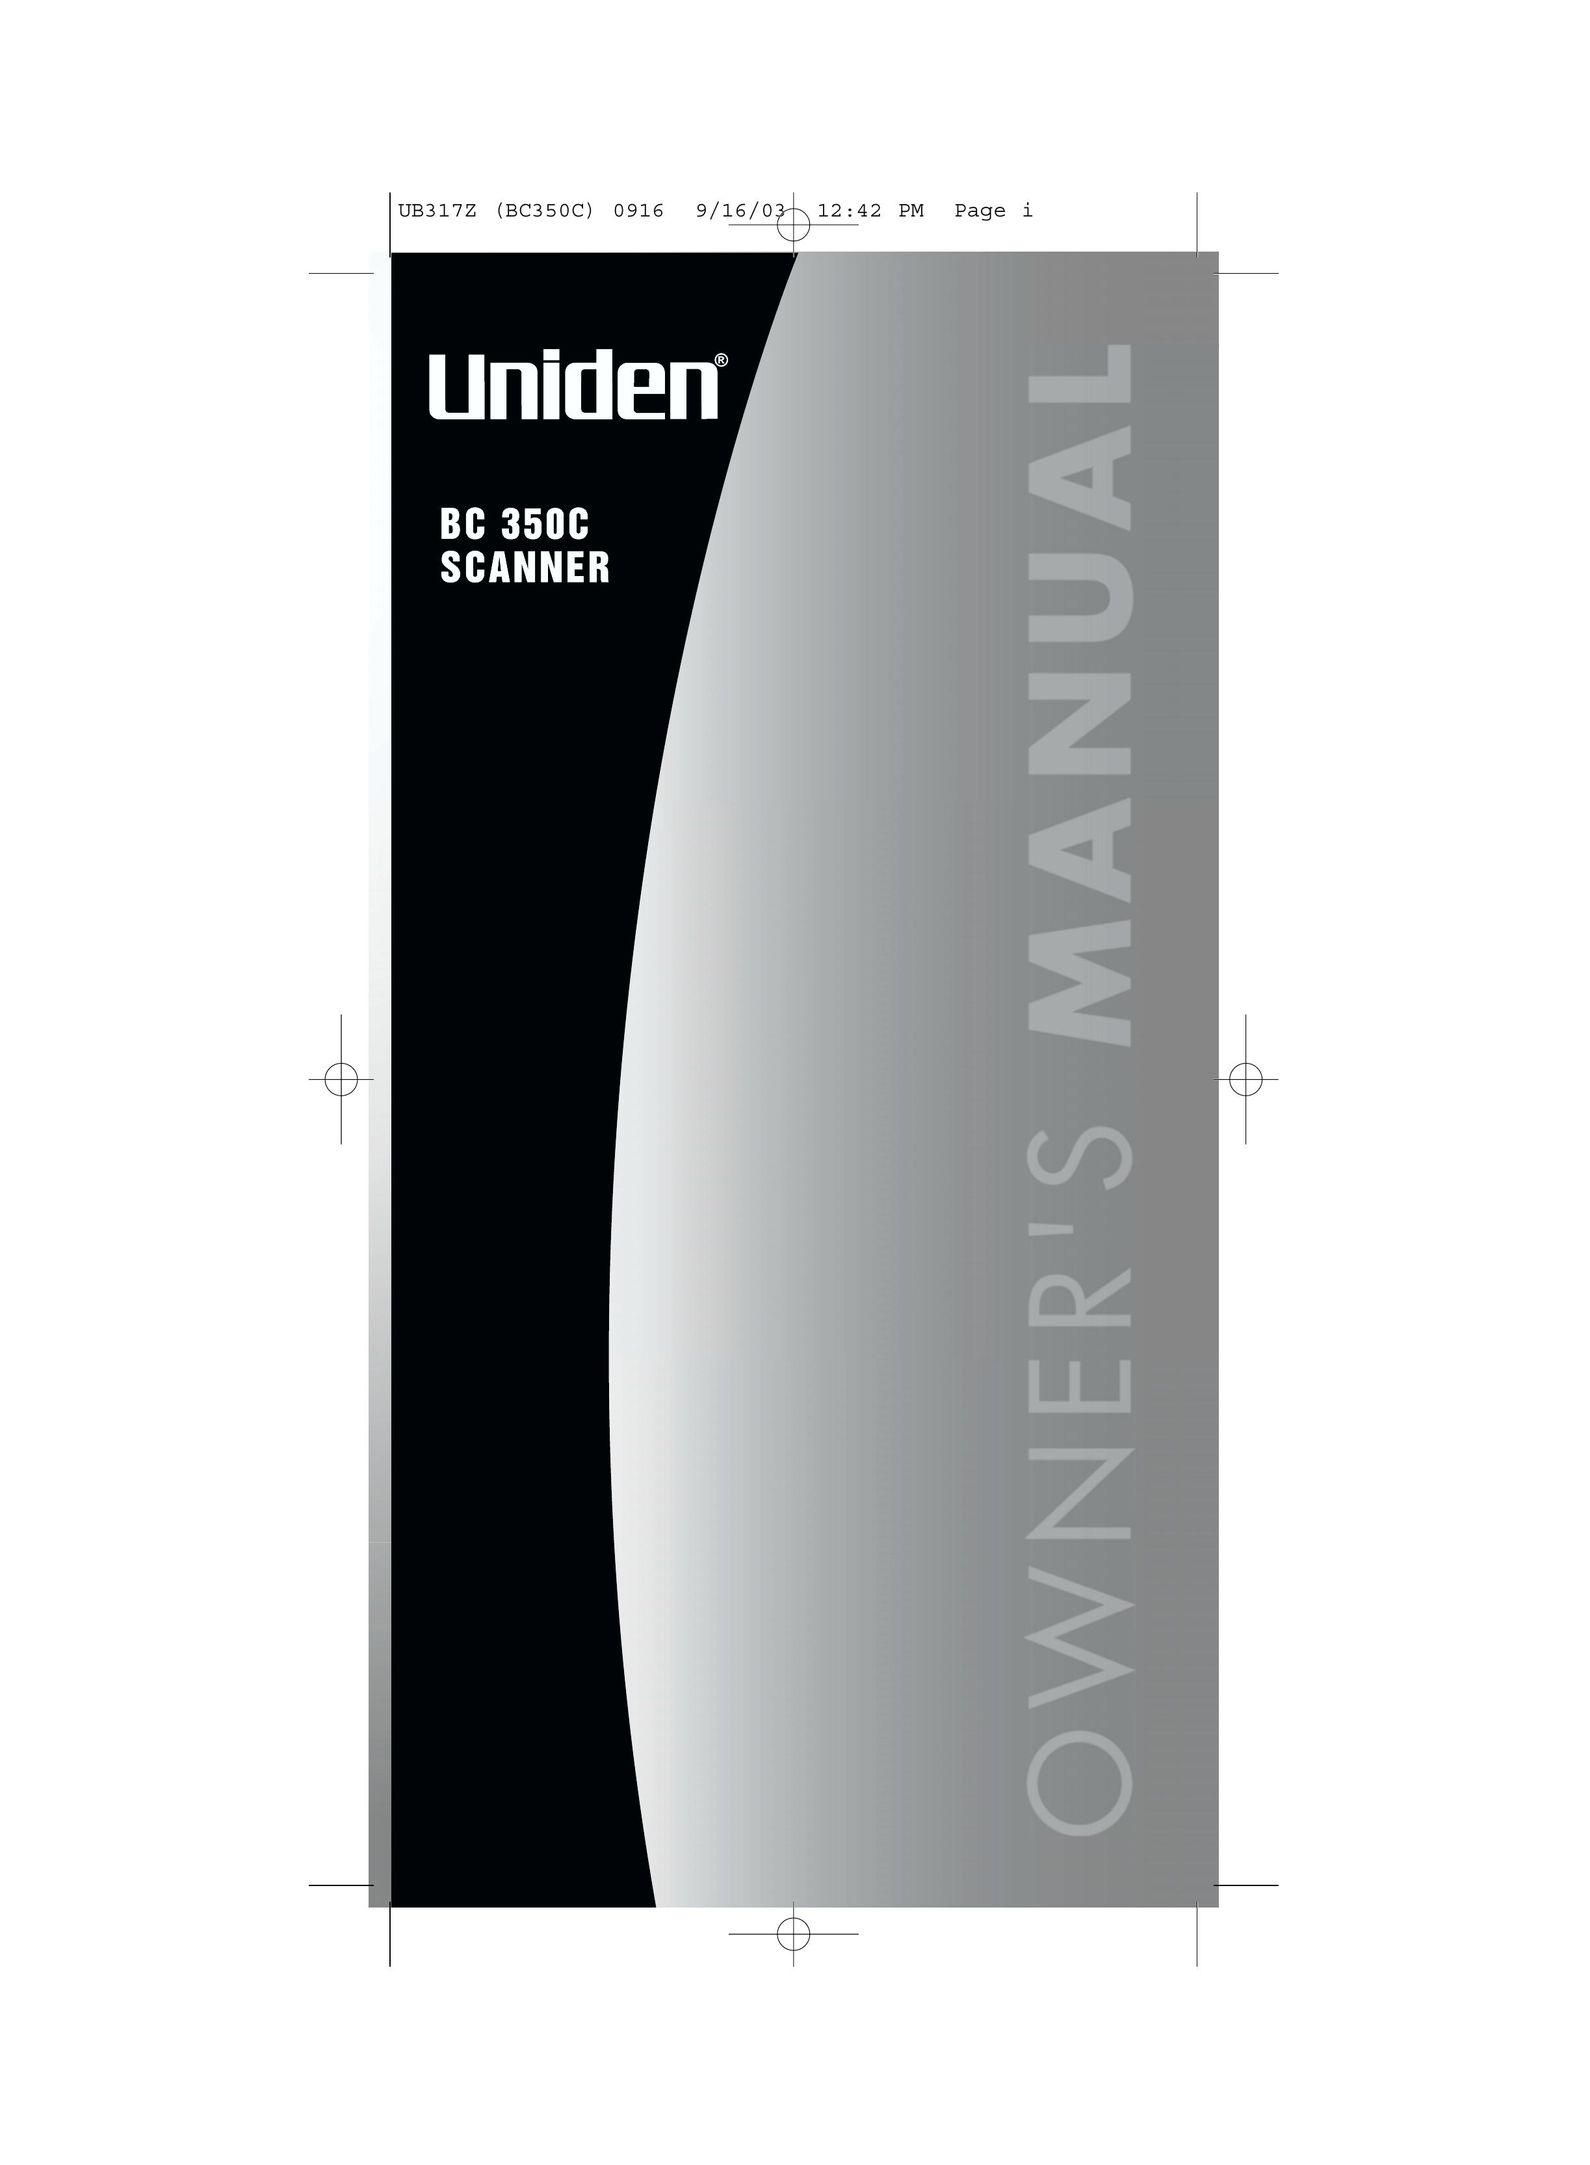 Uniden BC350C Scanner User Manual